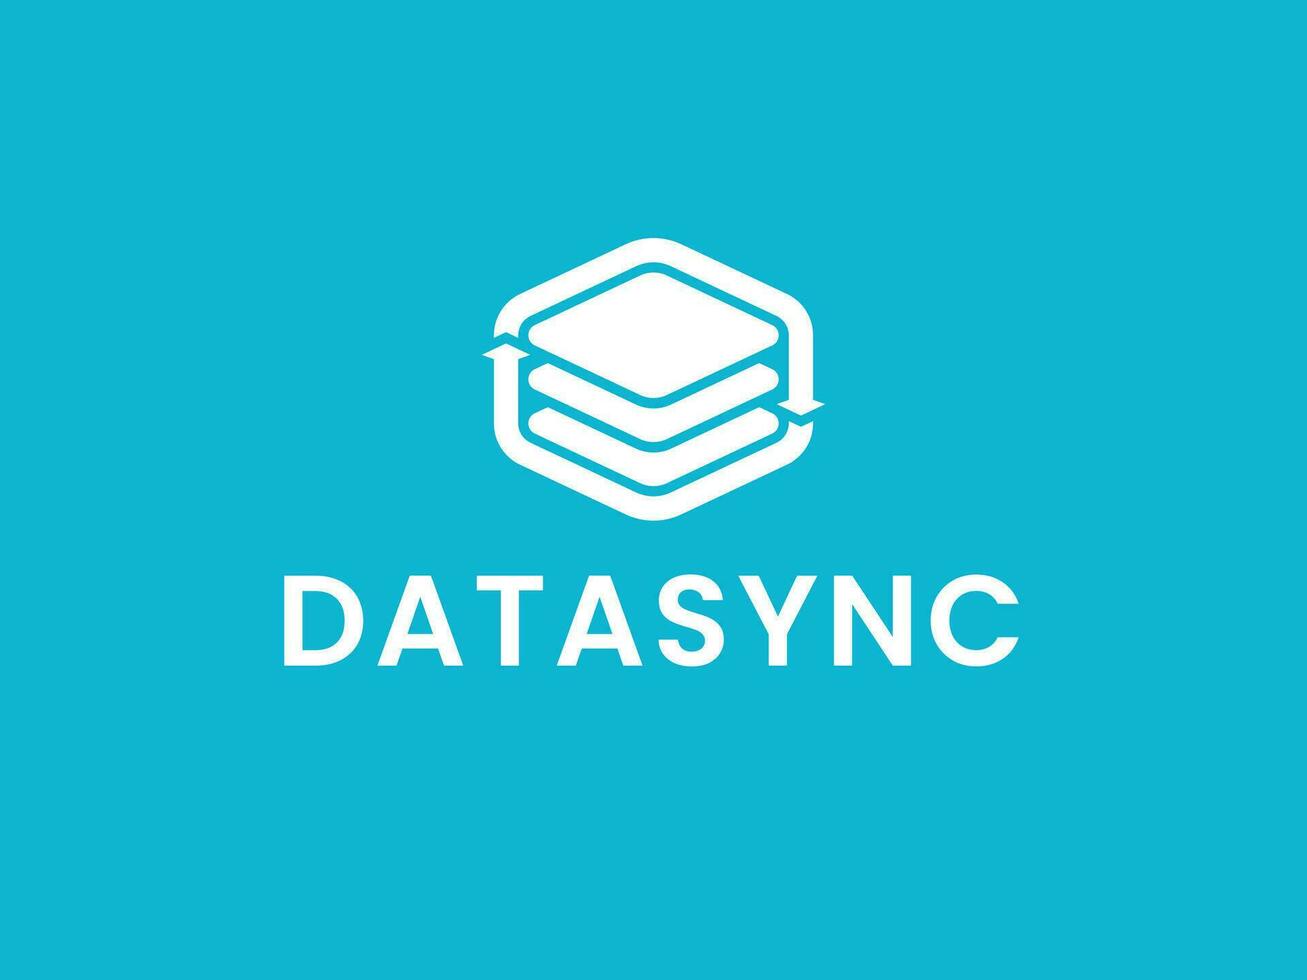 Digital Daten synchronisieren Logo Konzept vektor